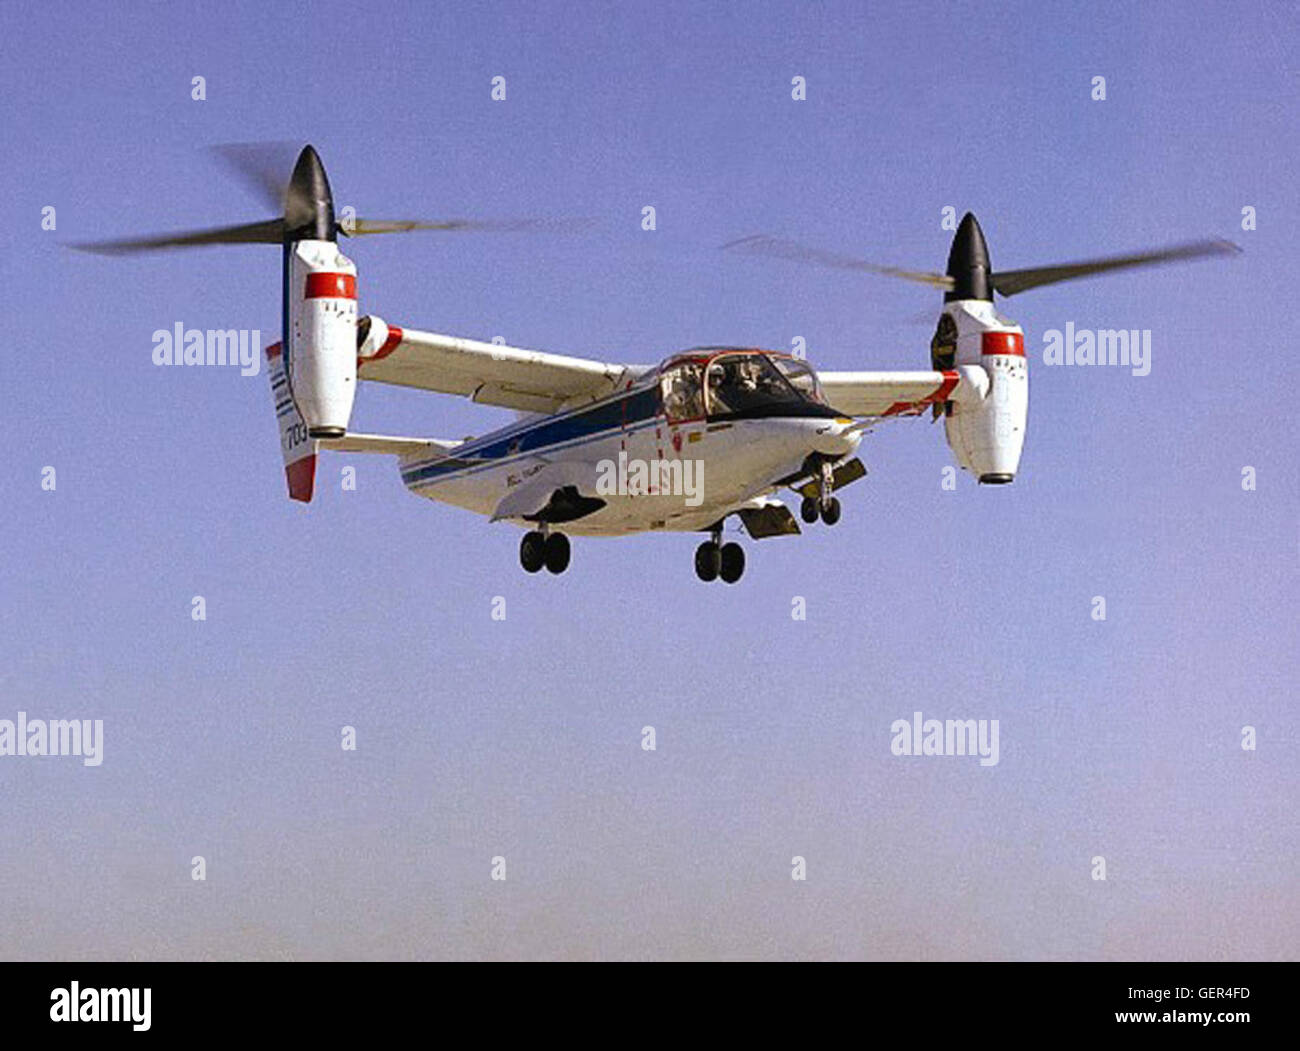 (1978) der NASA-Armee-Bell XV-15 Tiltrotor Forschungsflugzeug schwebte (1976) und demonstrierte dann Umwandlung und Vorwärtsflug (1978) als das erste kippbare Rotor-Fahrzeug, die Probleme der "Prop Wirbel." Durch ungeheuer schwierig Forschung konnte das Tilt Rotor Flugzeug verbinden die Vorteile der vertikalen Start und Landung Fähigkeiten, die an den traditionellen Hubschrauber mit der Fahrgeschwindigkeit und ein Starrflügler Turboprop Flugzeug innewohnen. Diese Forschung kann schließlich auf die Luftfahrtindustrie Transport mit der Flexibilität für High-Spe führen Stockfoto